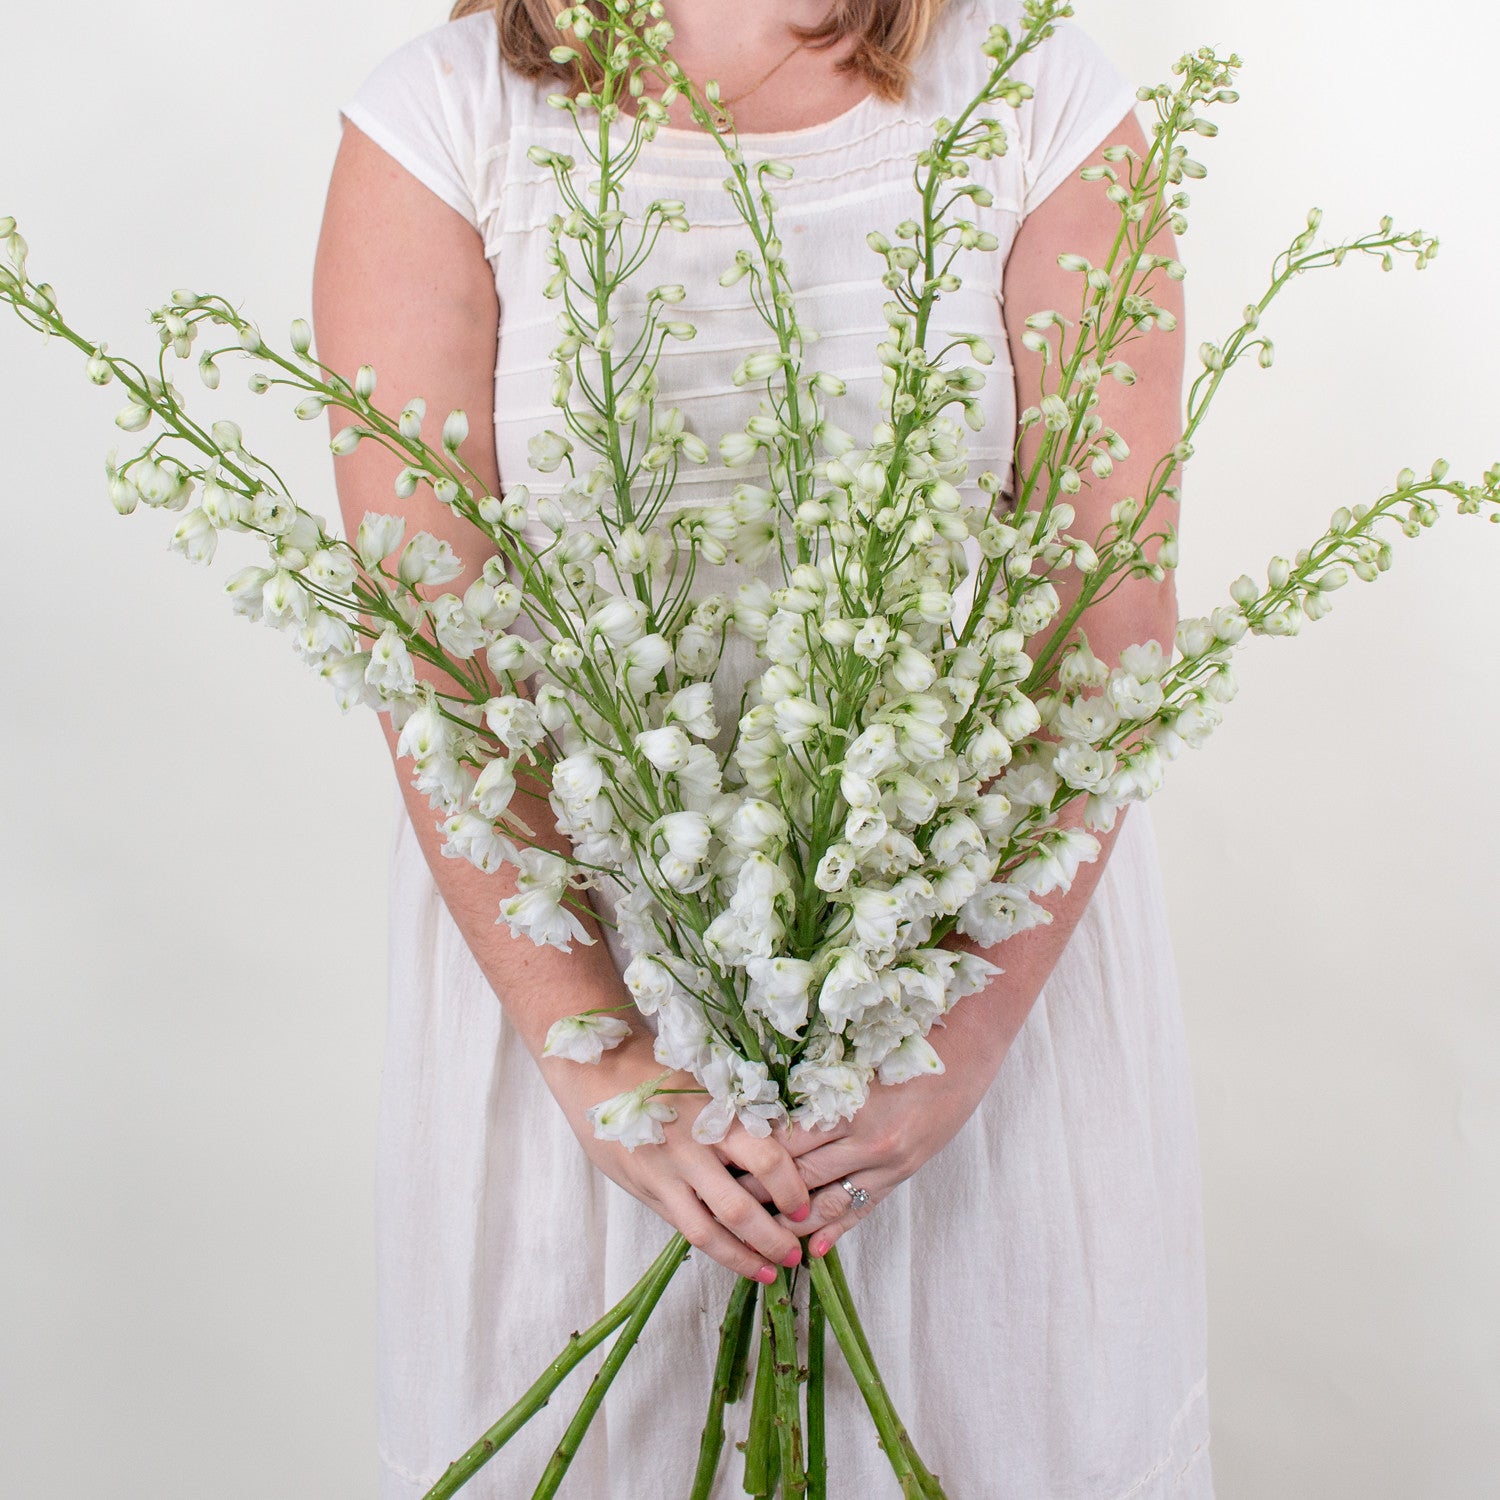 Bulk White Delphinium Flower